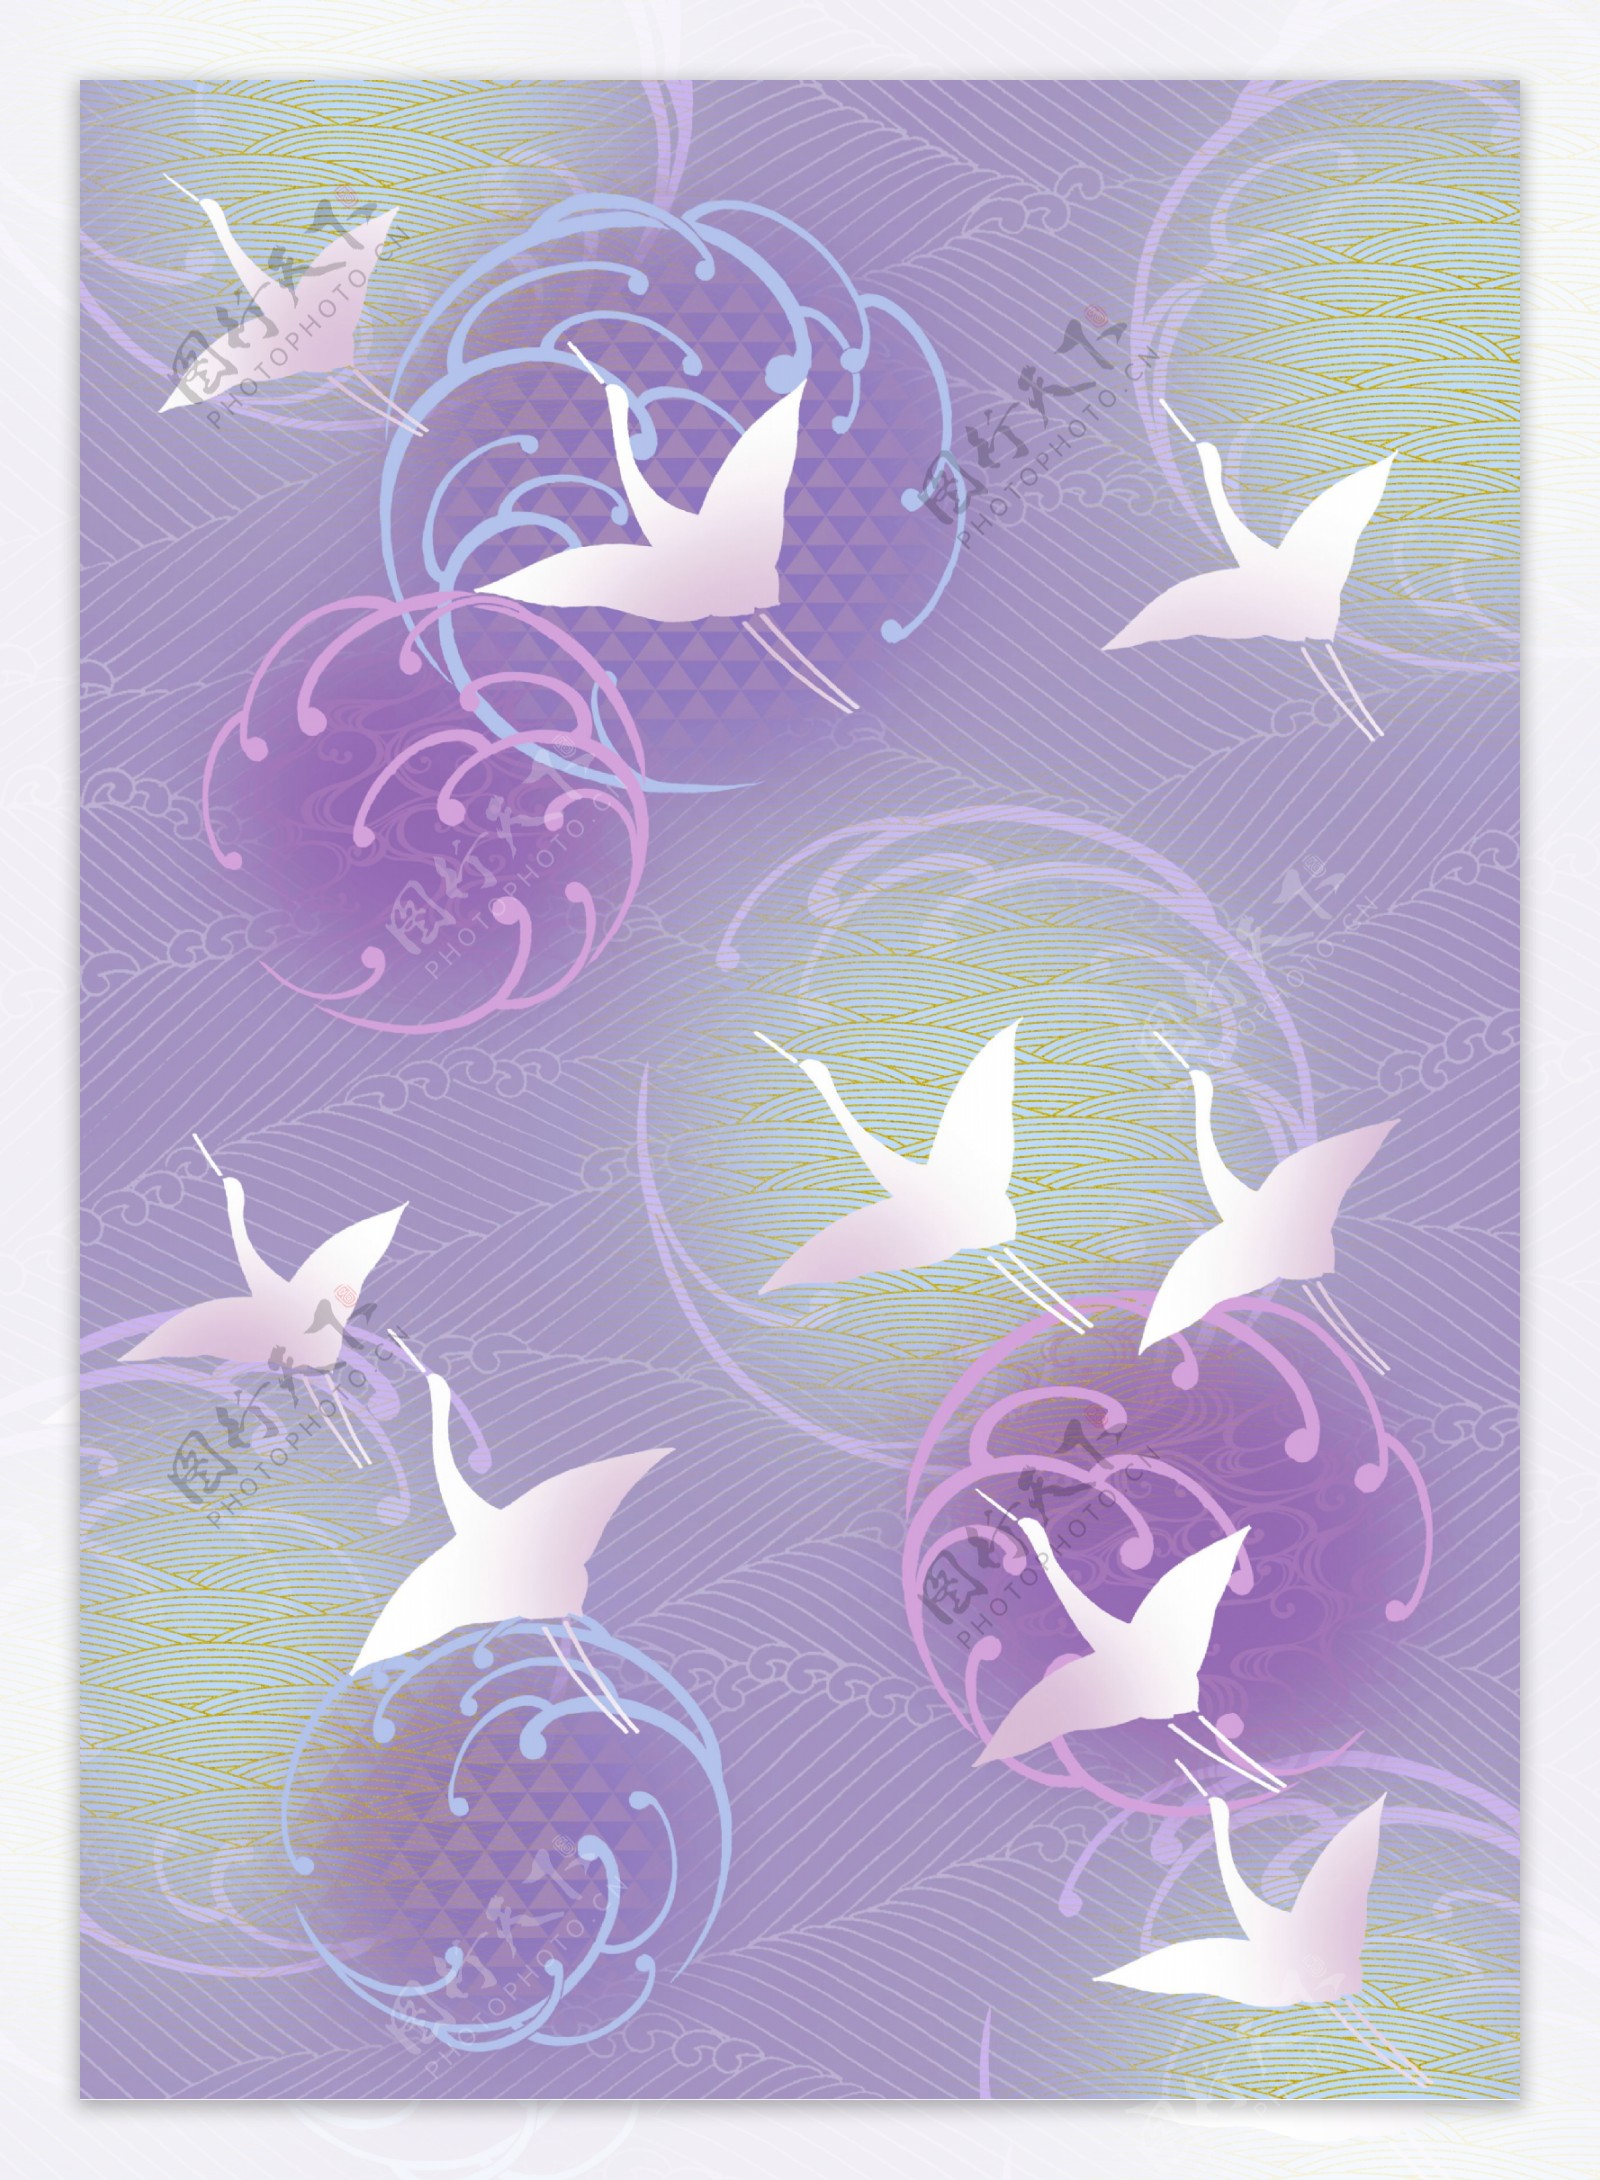 紫色小鸟花纹图案背景